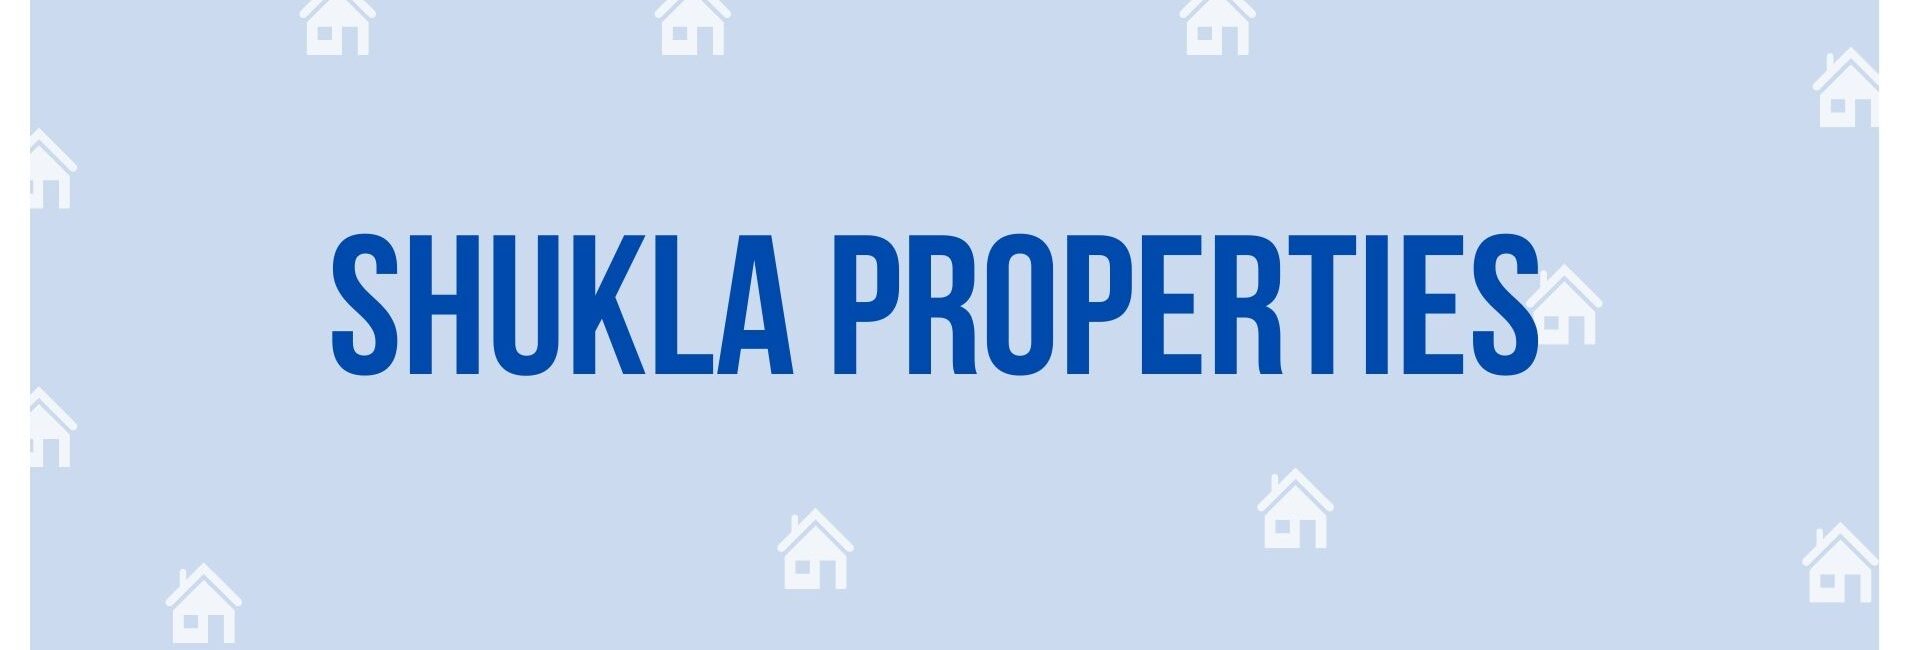 Shukla Properties - Property Dealer in Noida